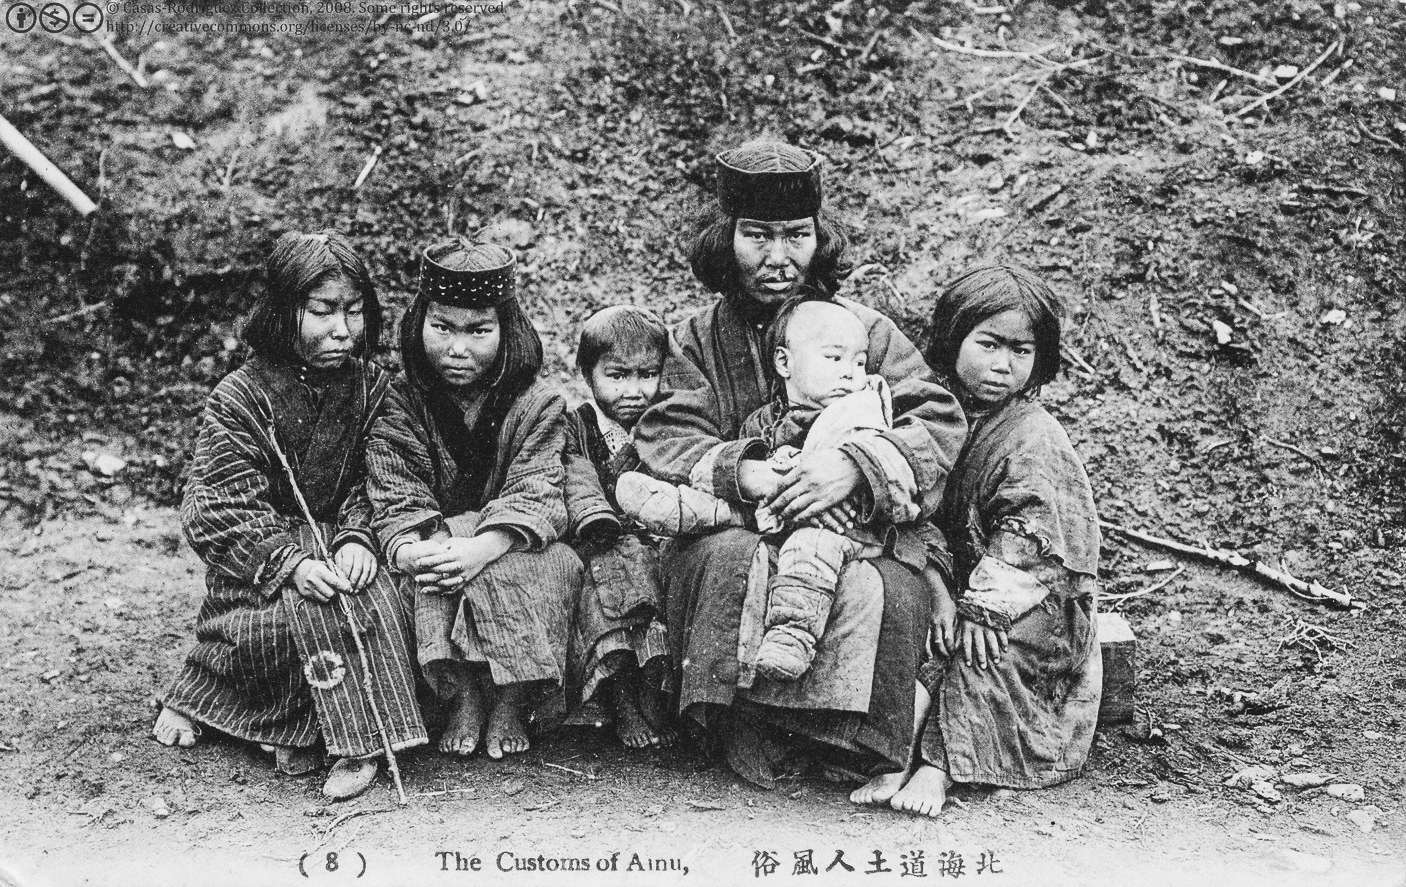 Ainu (ook wel Ezo genoemd in historische teksten) is een etnische groep die inheems is in Hokkaidō, de Koerilen-eilanden en een groot deel van Sachalin. Er zijn vandaag waarschijnlijk meer dan 150,000 Ainu; het exacte cijfer is echter niet bekend, omdat veel Ainu hun oorsprong verbergen vanwege raciale problemen in Japan